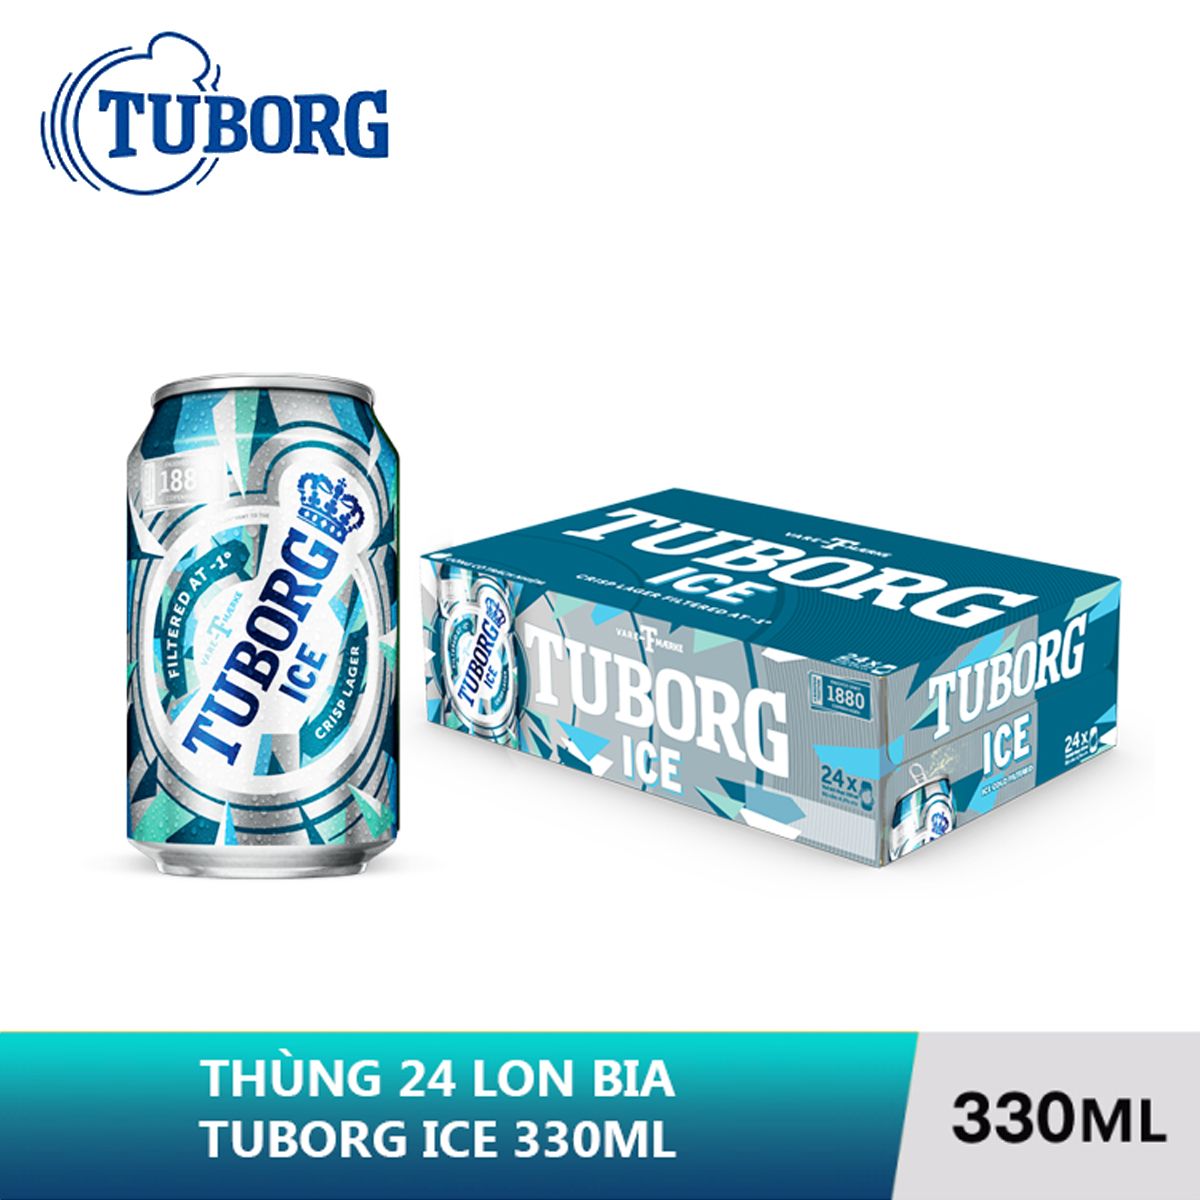  THÙNG TUBORG ICE 24 LON (330ML) - TRÚNG THƯỞNG 